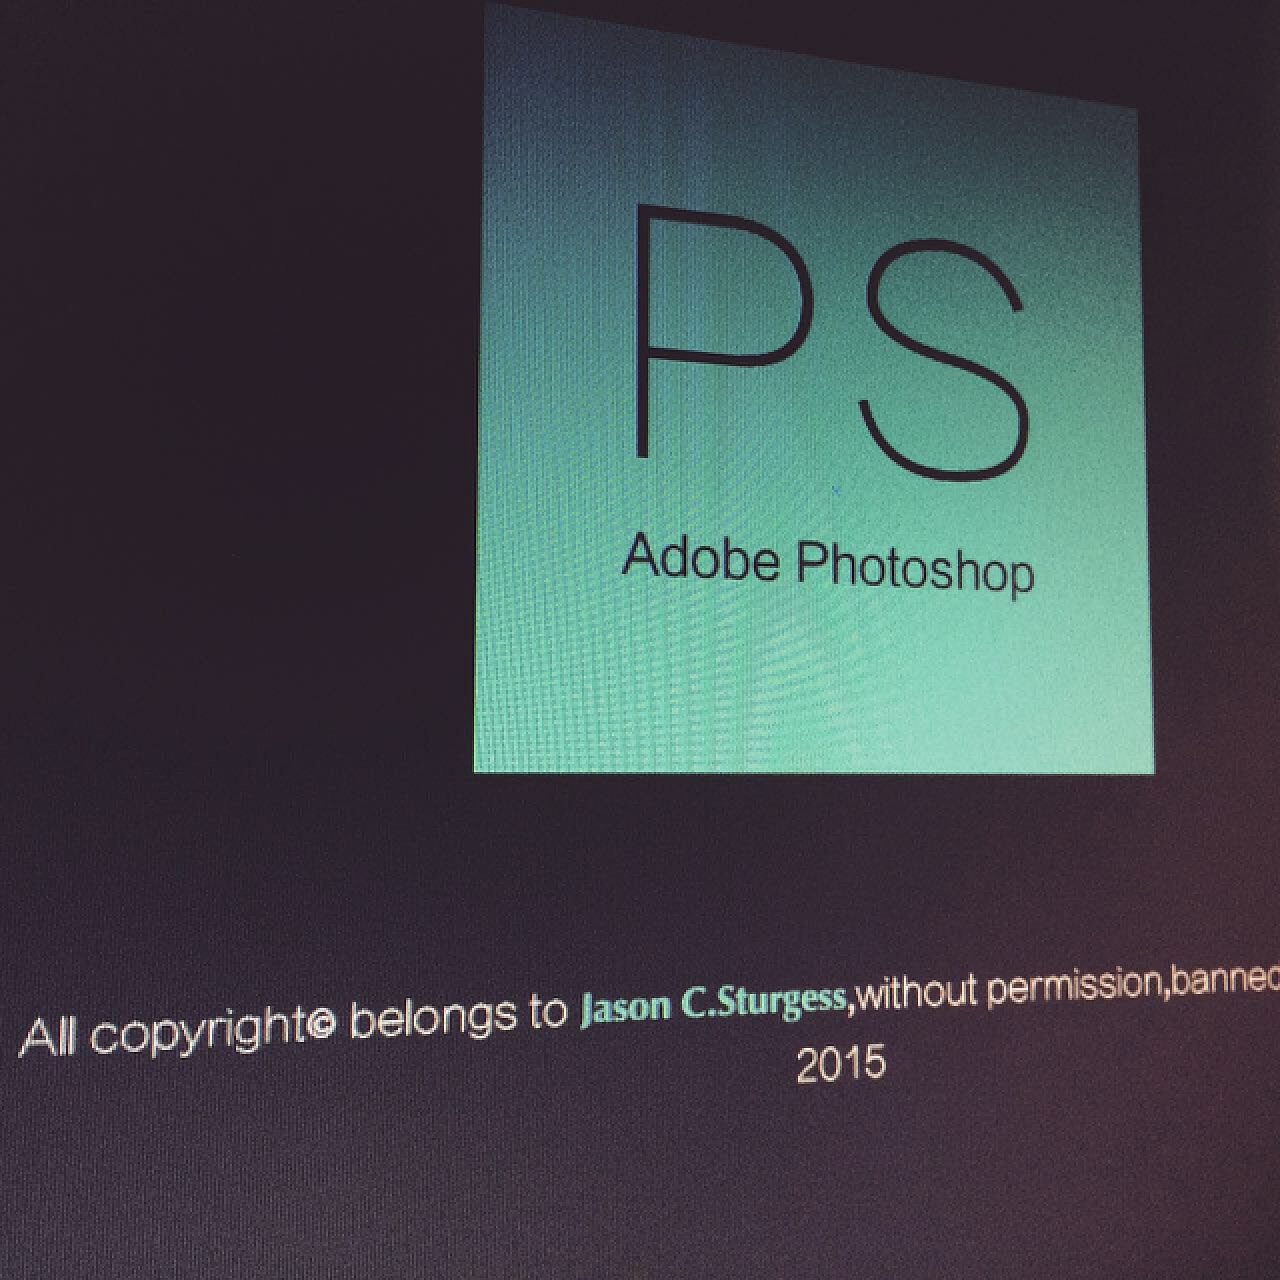 GT720 显卡能否胜任 Adobe Photoshop 软件运行？性能表现与要求解析  第6张